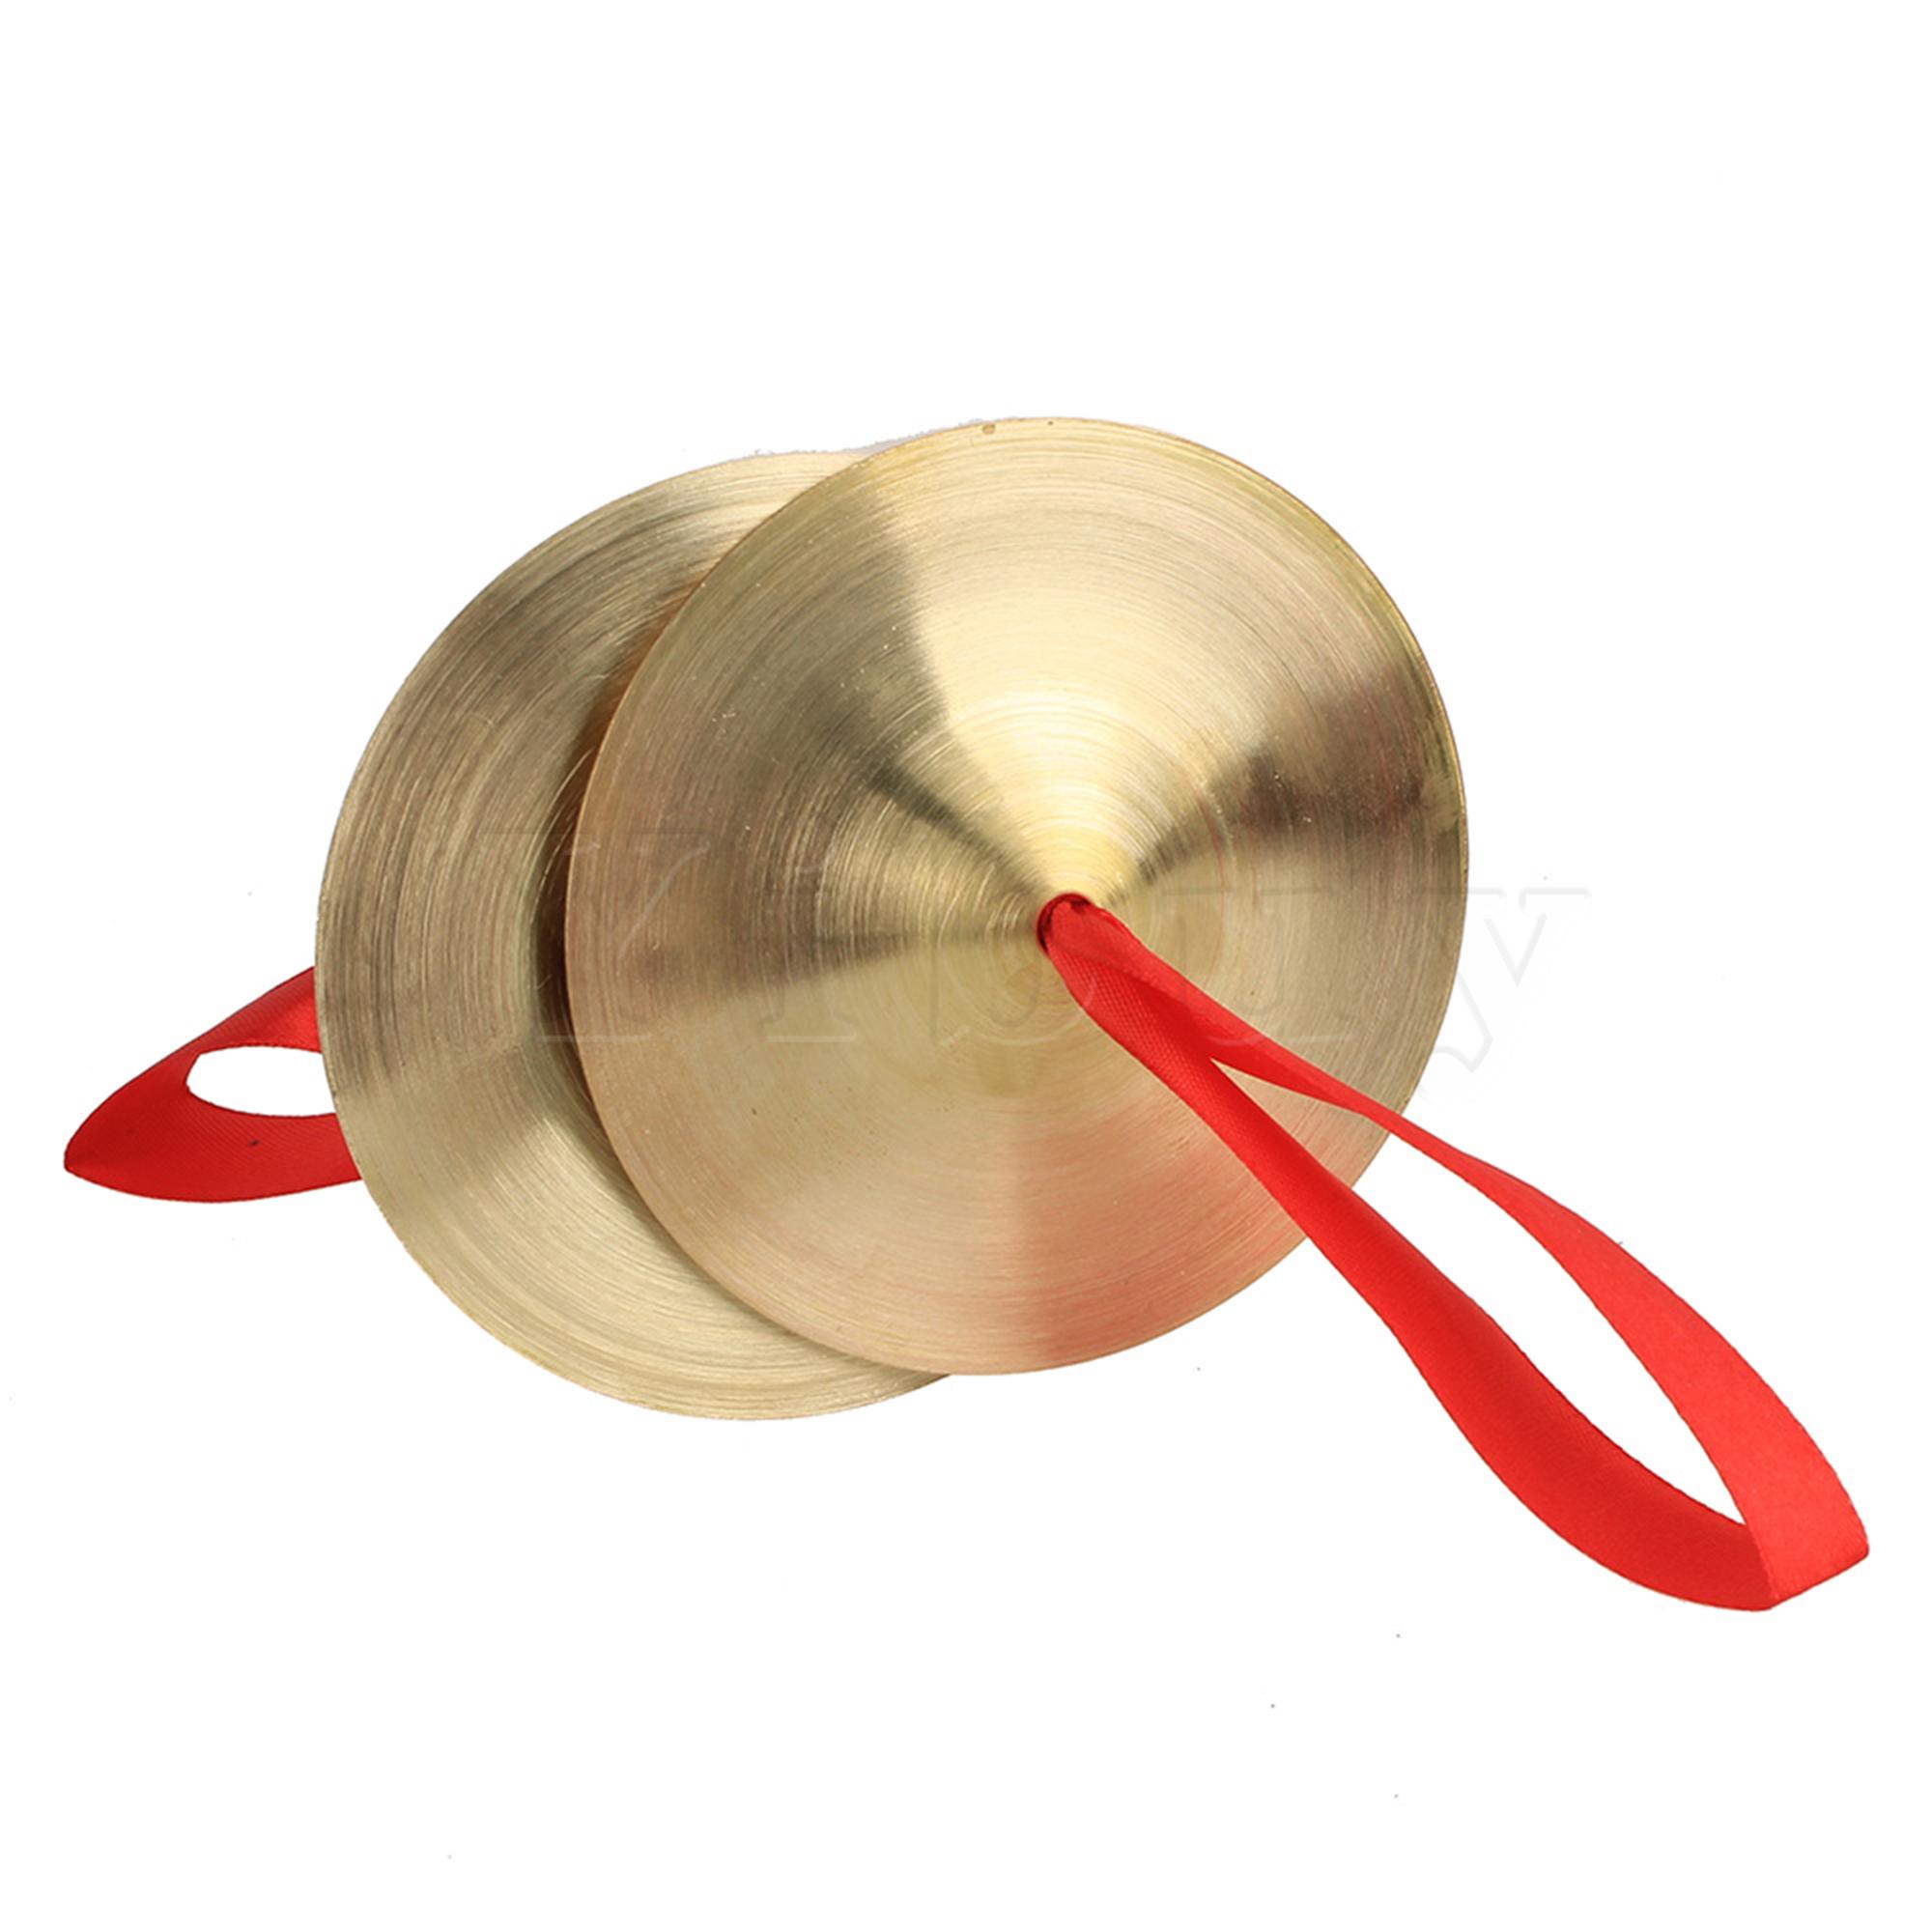 Yibuy orff instrumenter kobber bækkener musikinstrument legetøj 9cm diameter gong